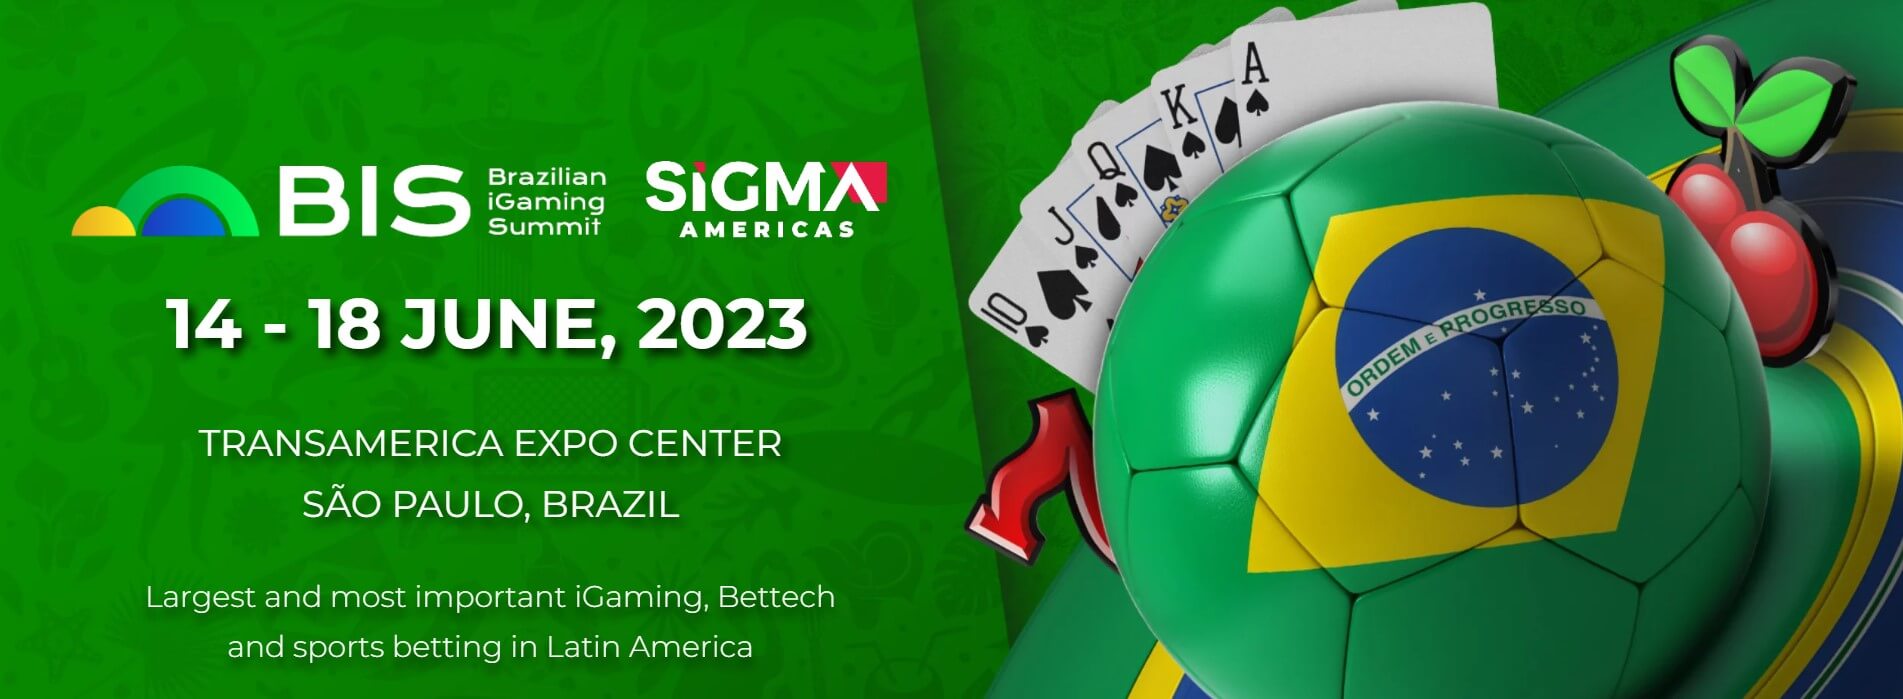 Brazilian iGaming Summit logo